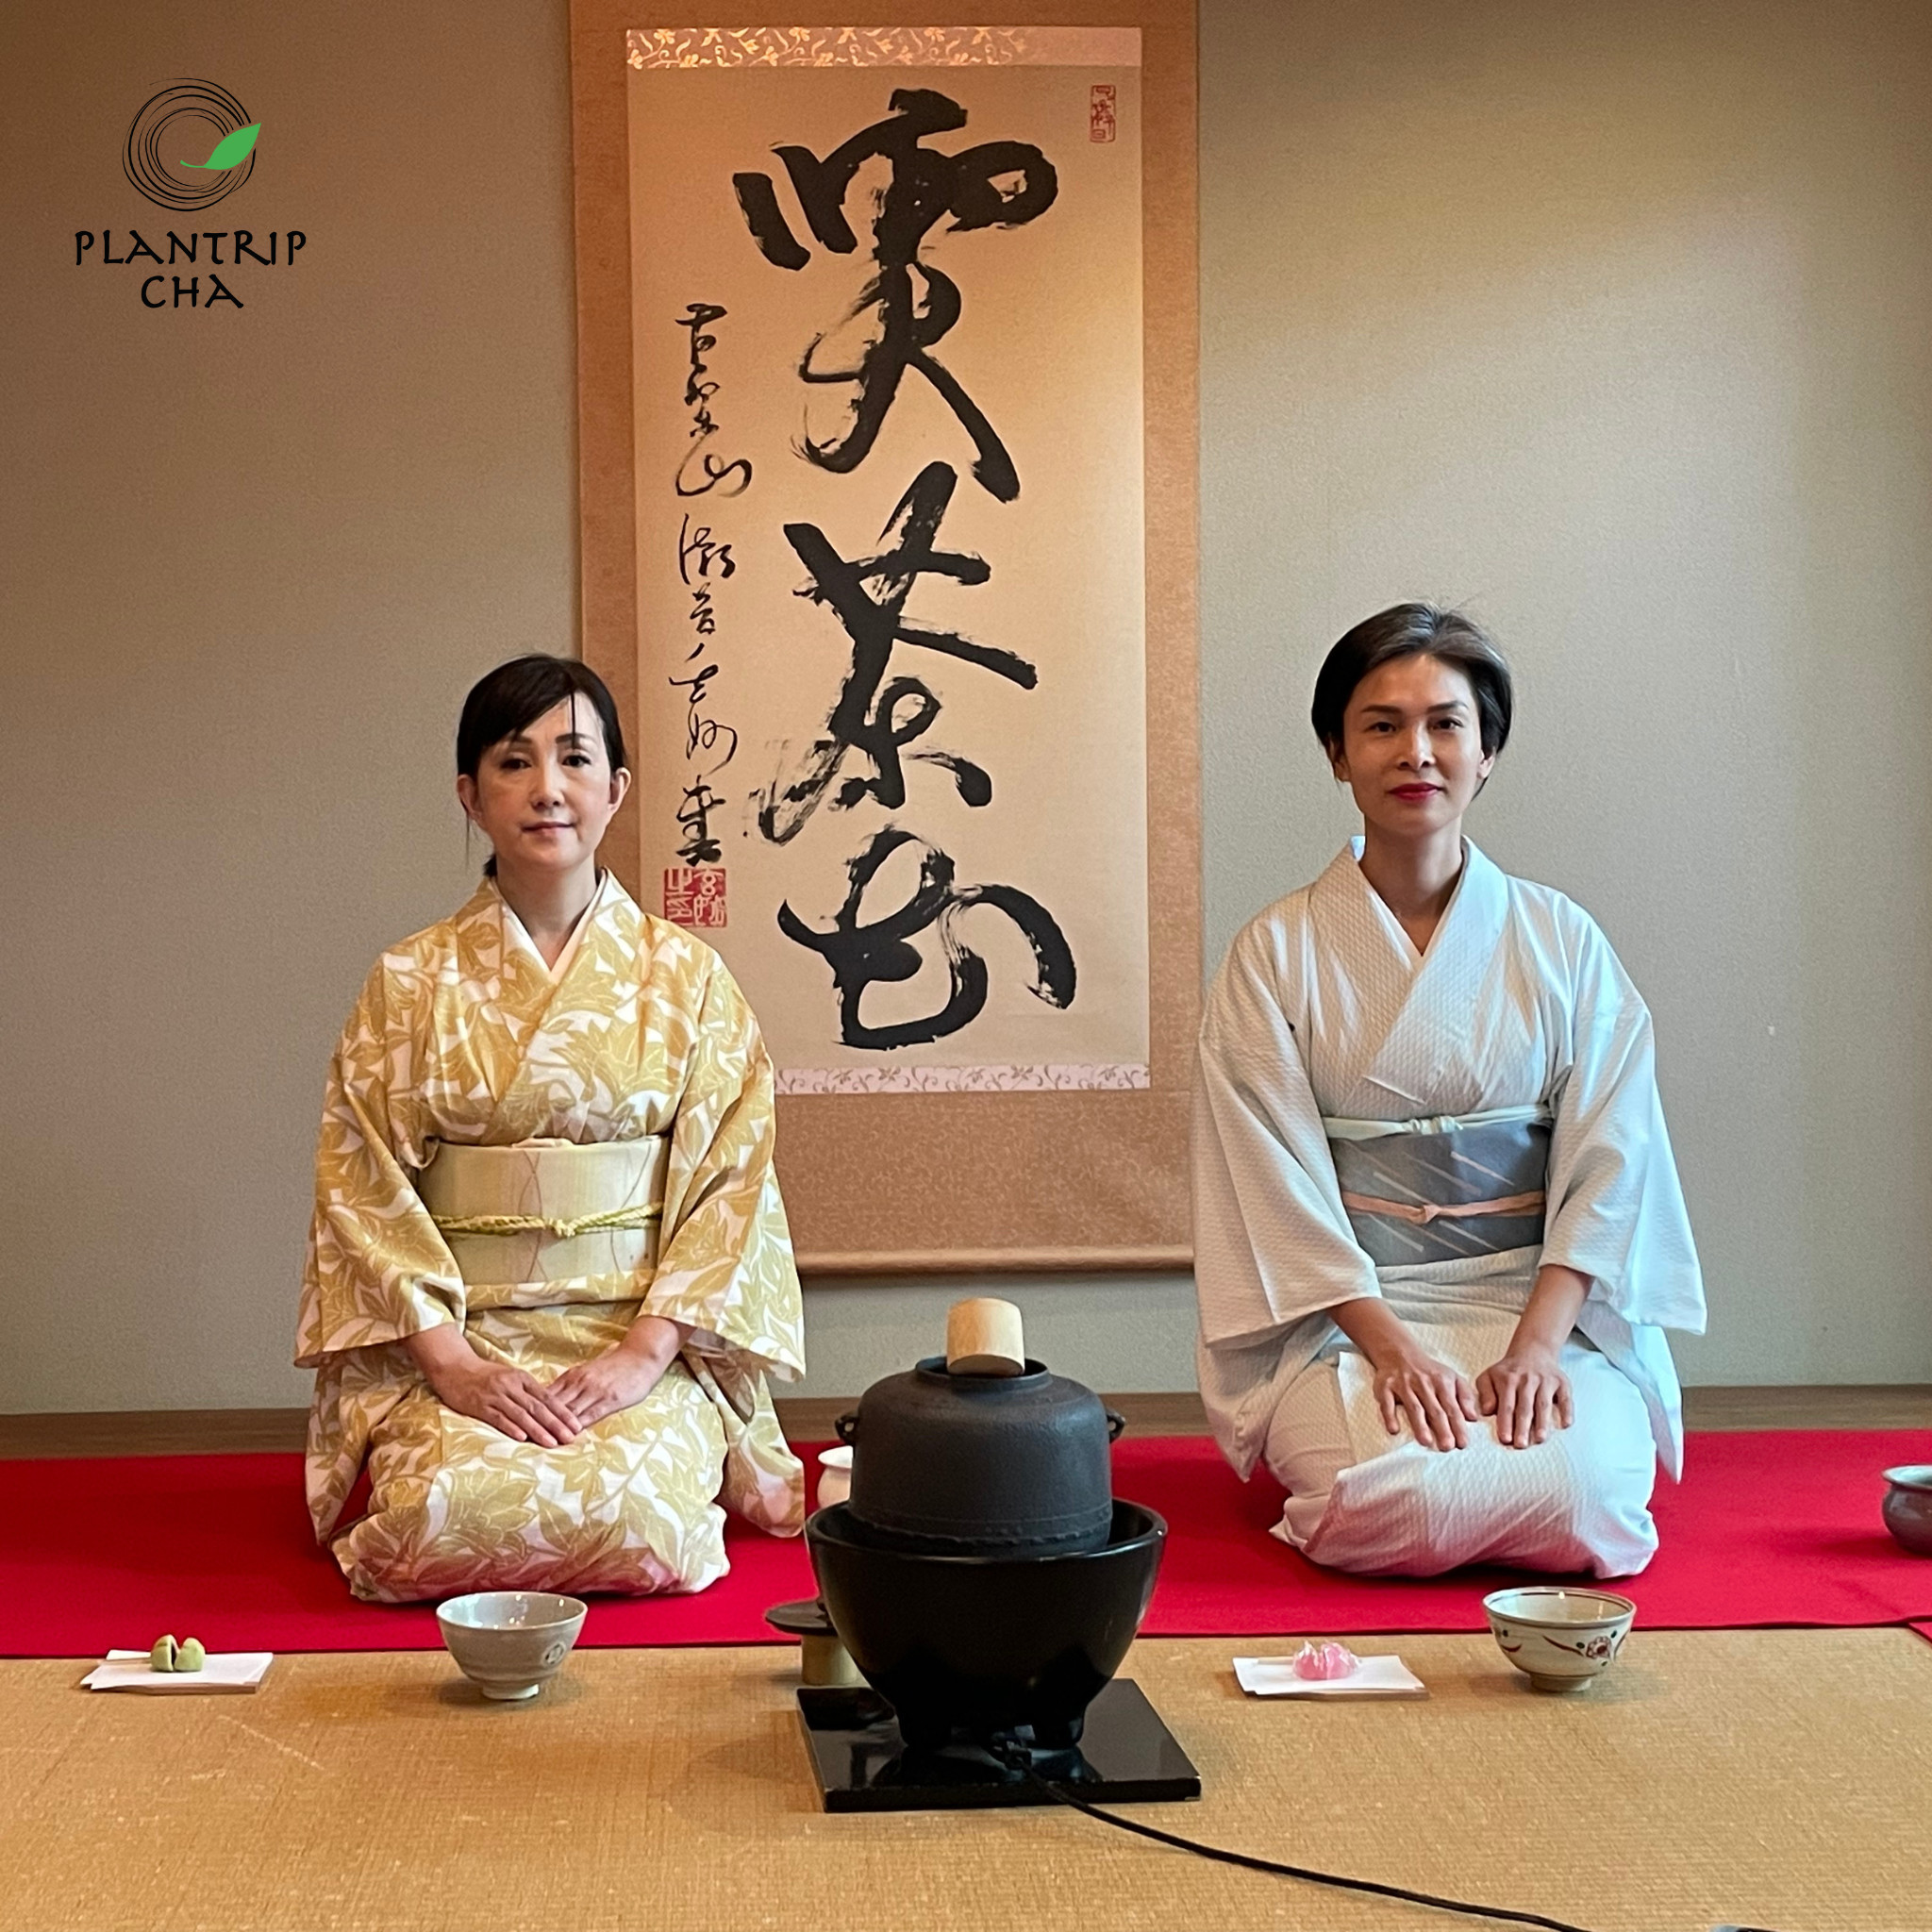 Tea Master Kim Thanh trải nghiệm văn hóa Trà tại Nhật